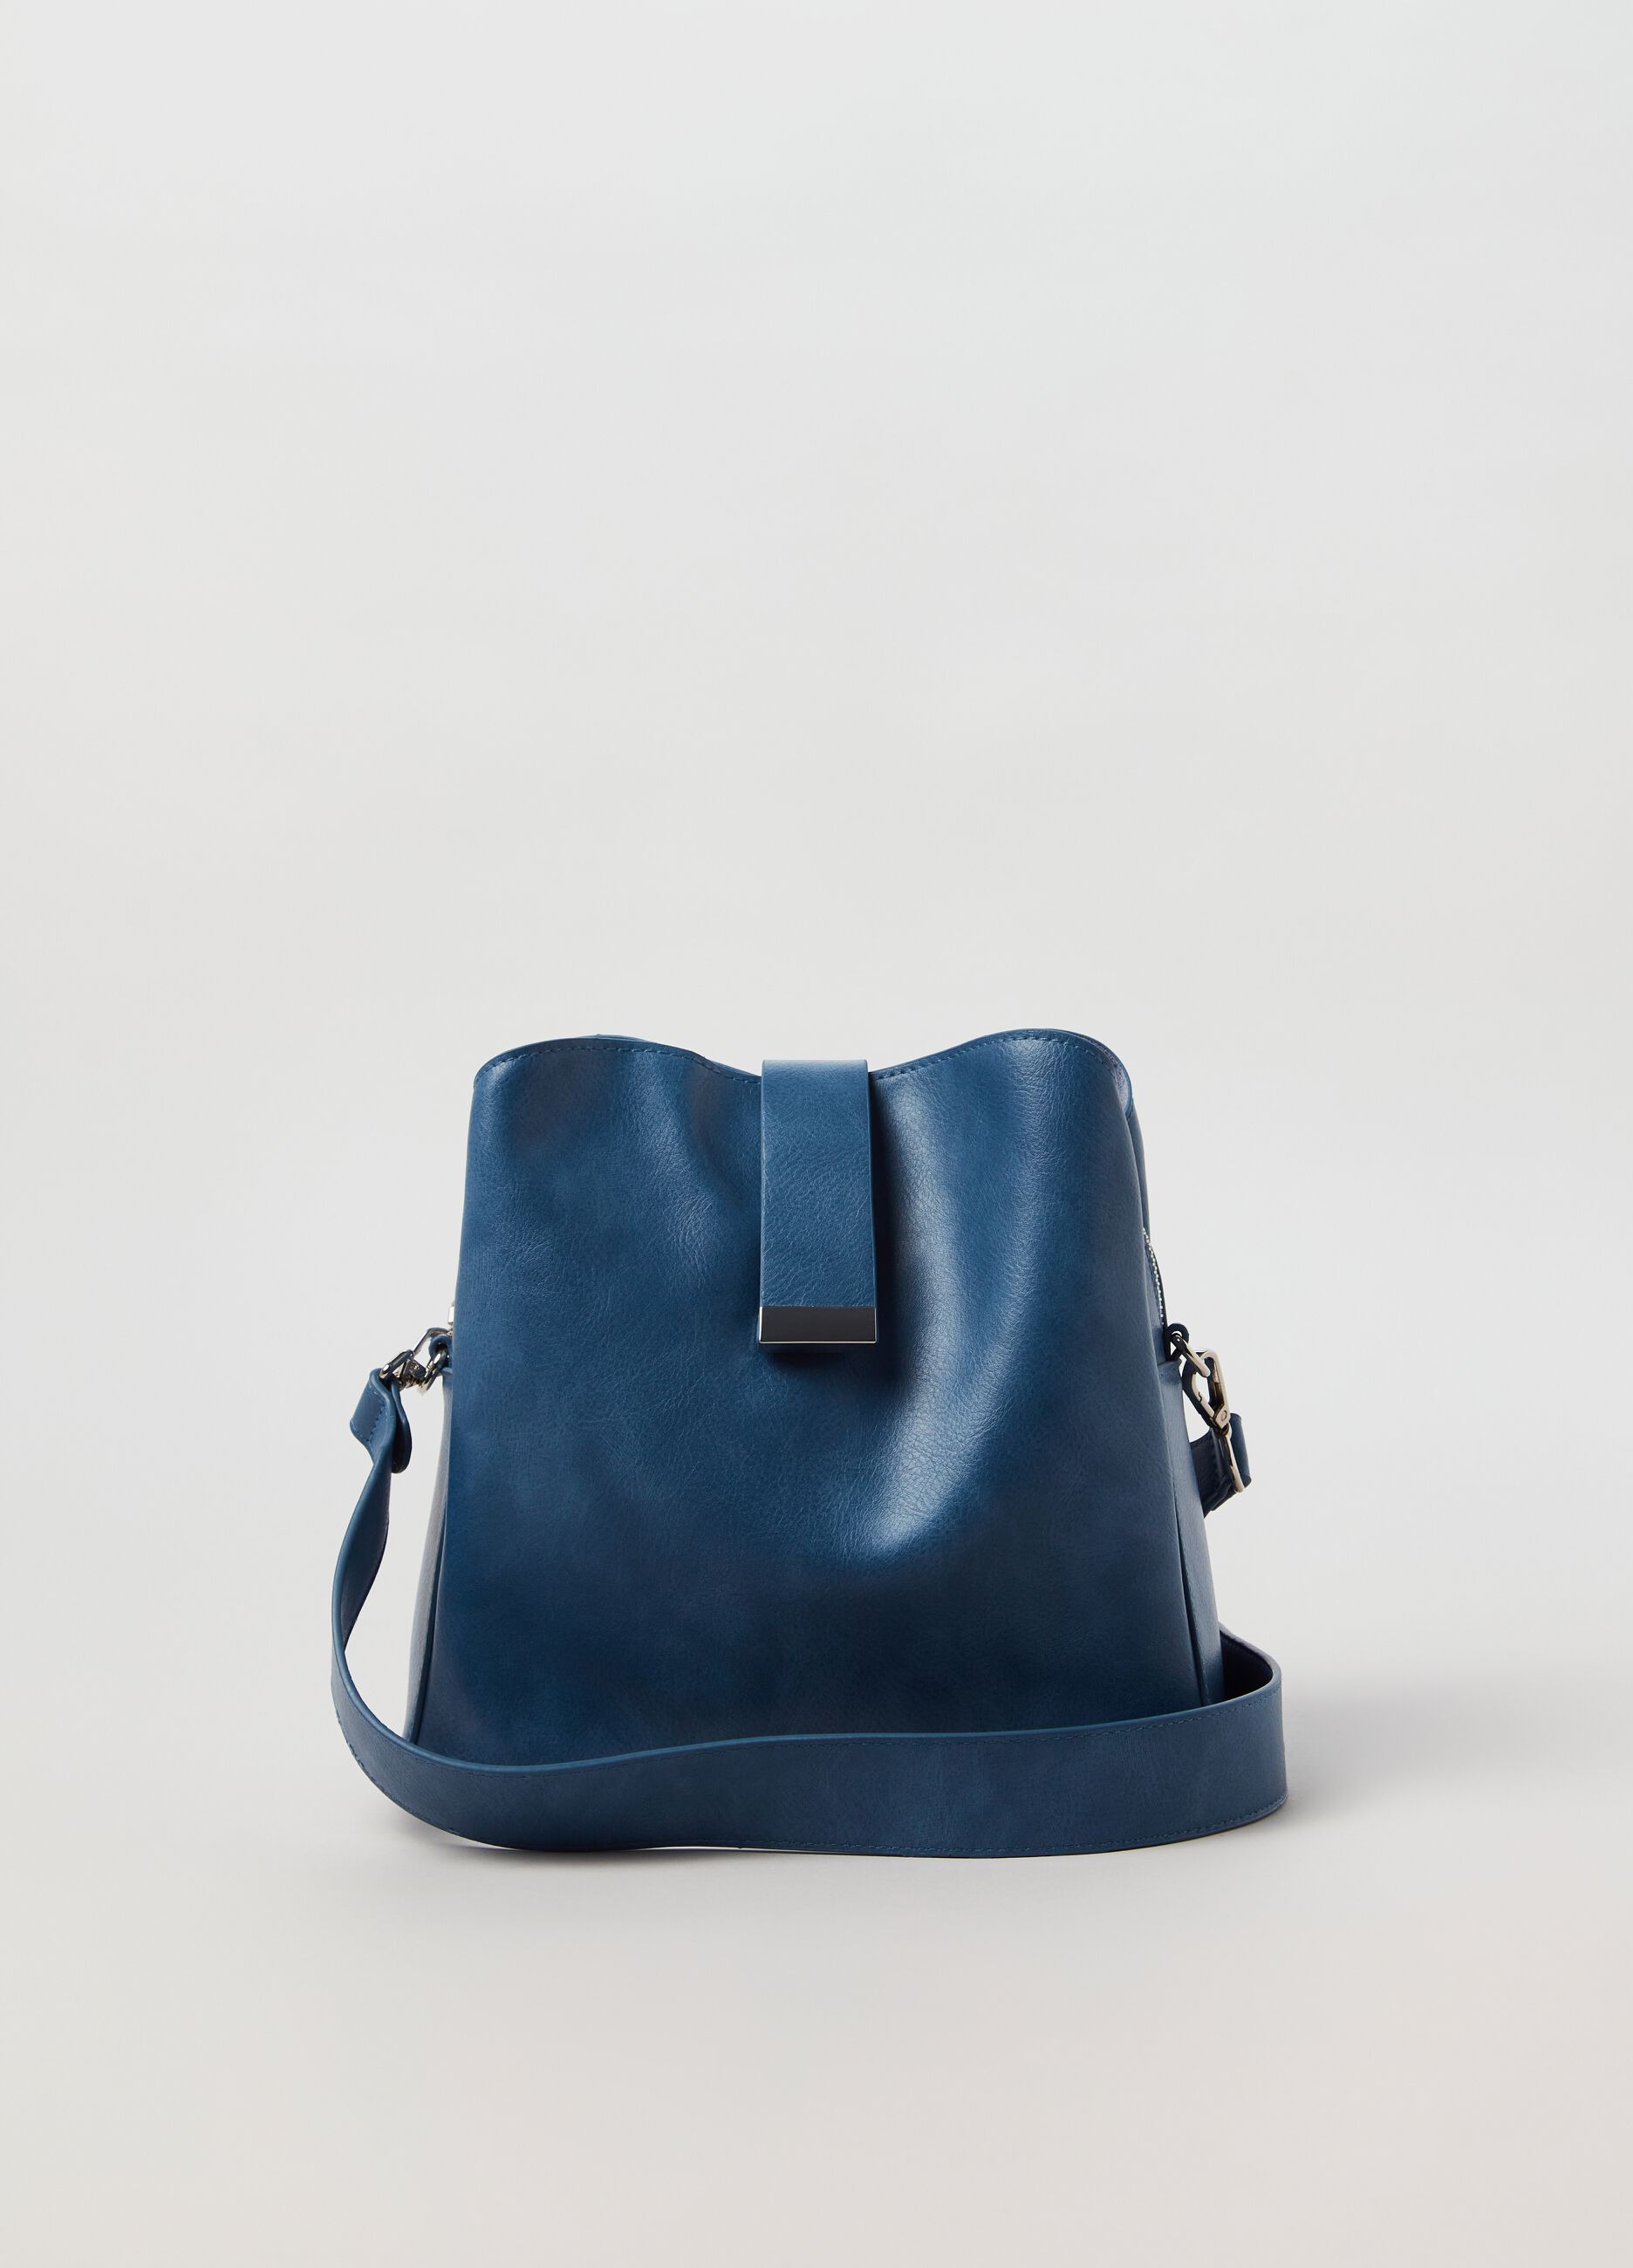 GABS | Blush Women's Handbag | YOOX